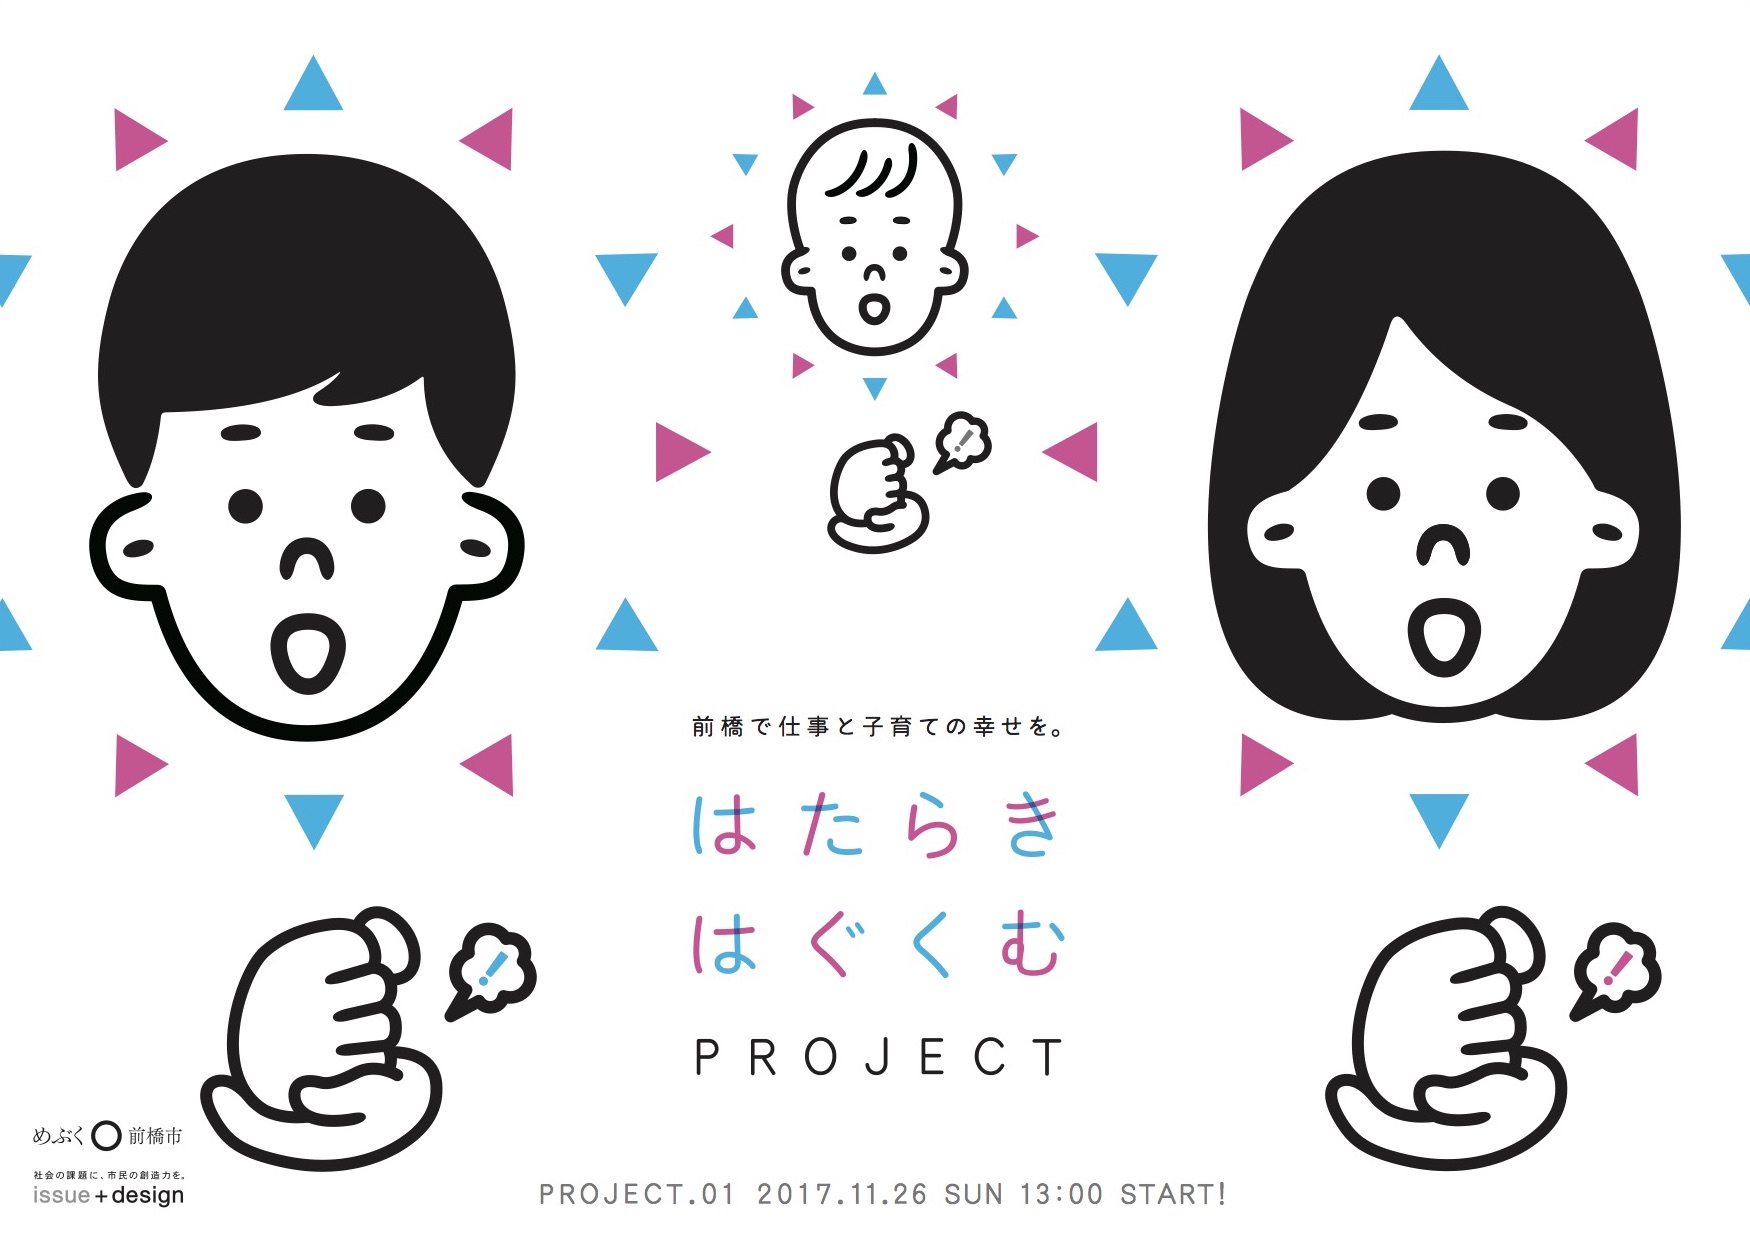 群馬県前橋市で 働きながら子どもを育てることの幸せを考える はたらき はぐくむ Project 始動 Issue Designのプレスリリース